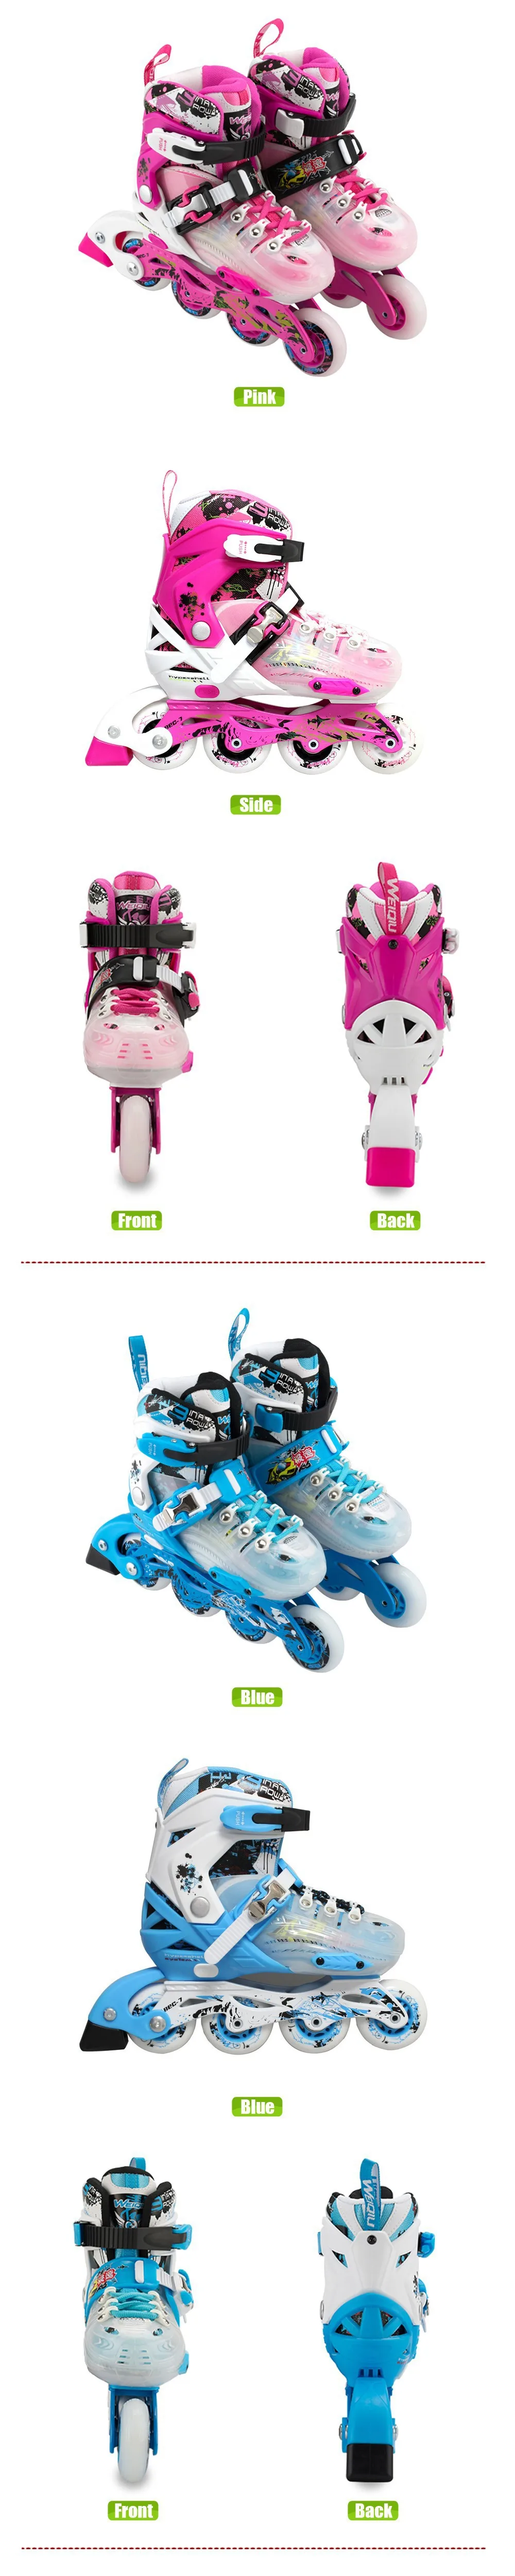 Japy Skate WeiQiu детские роликовые коньки регулируемые четыре колеса уличные роликовые коньки для детей JJ серия 5 цветов